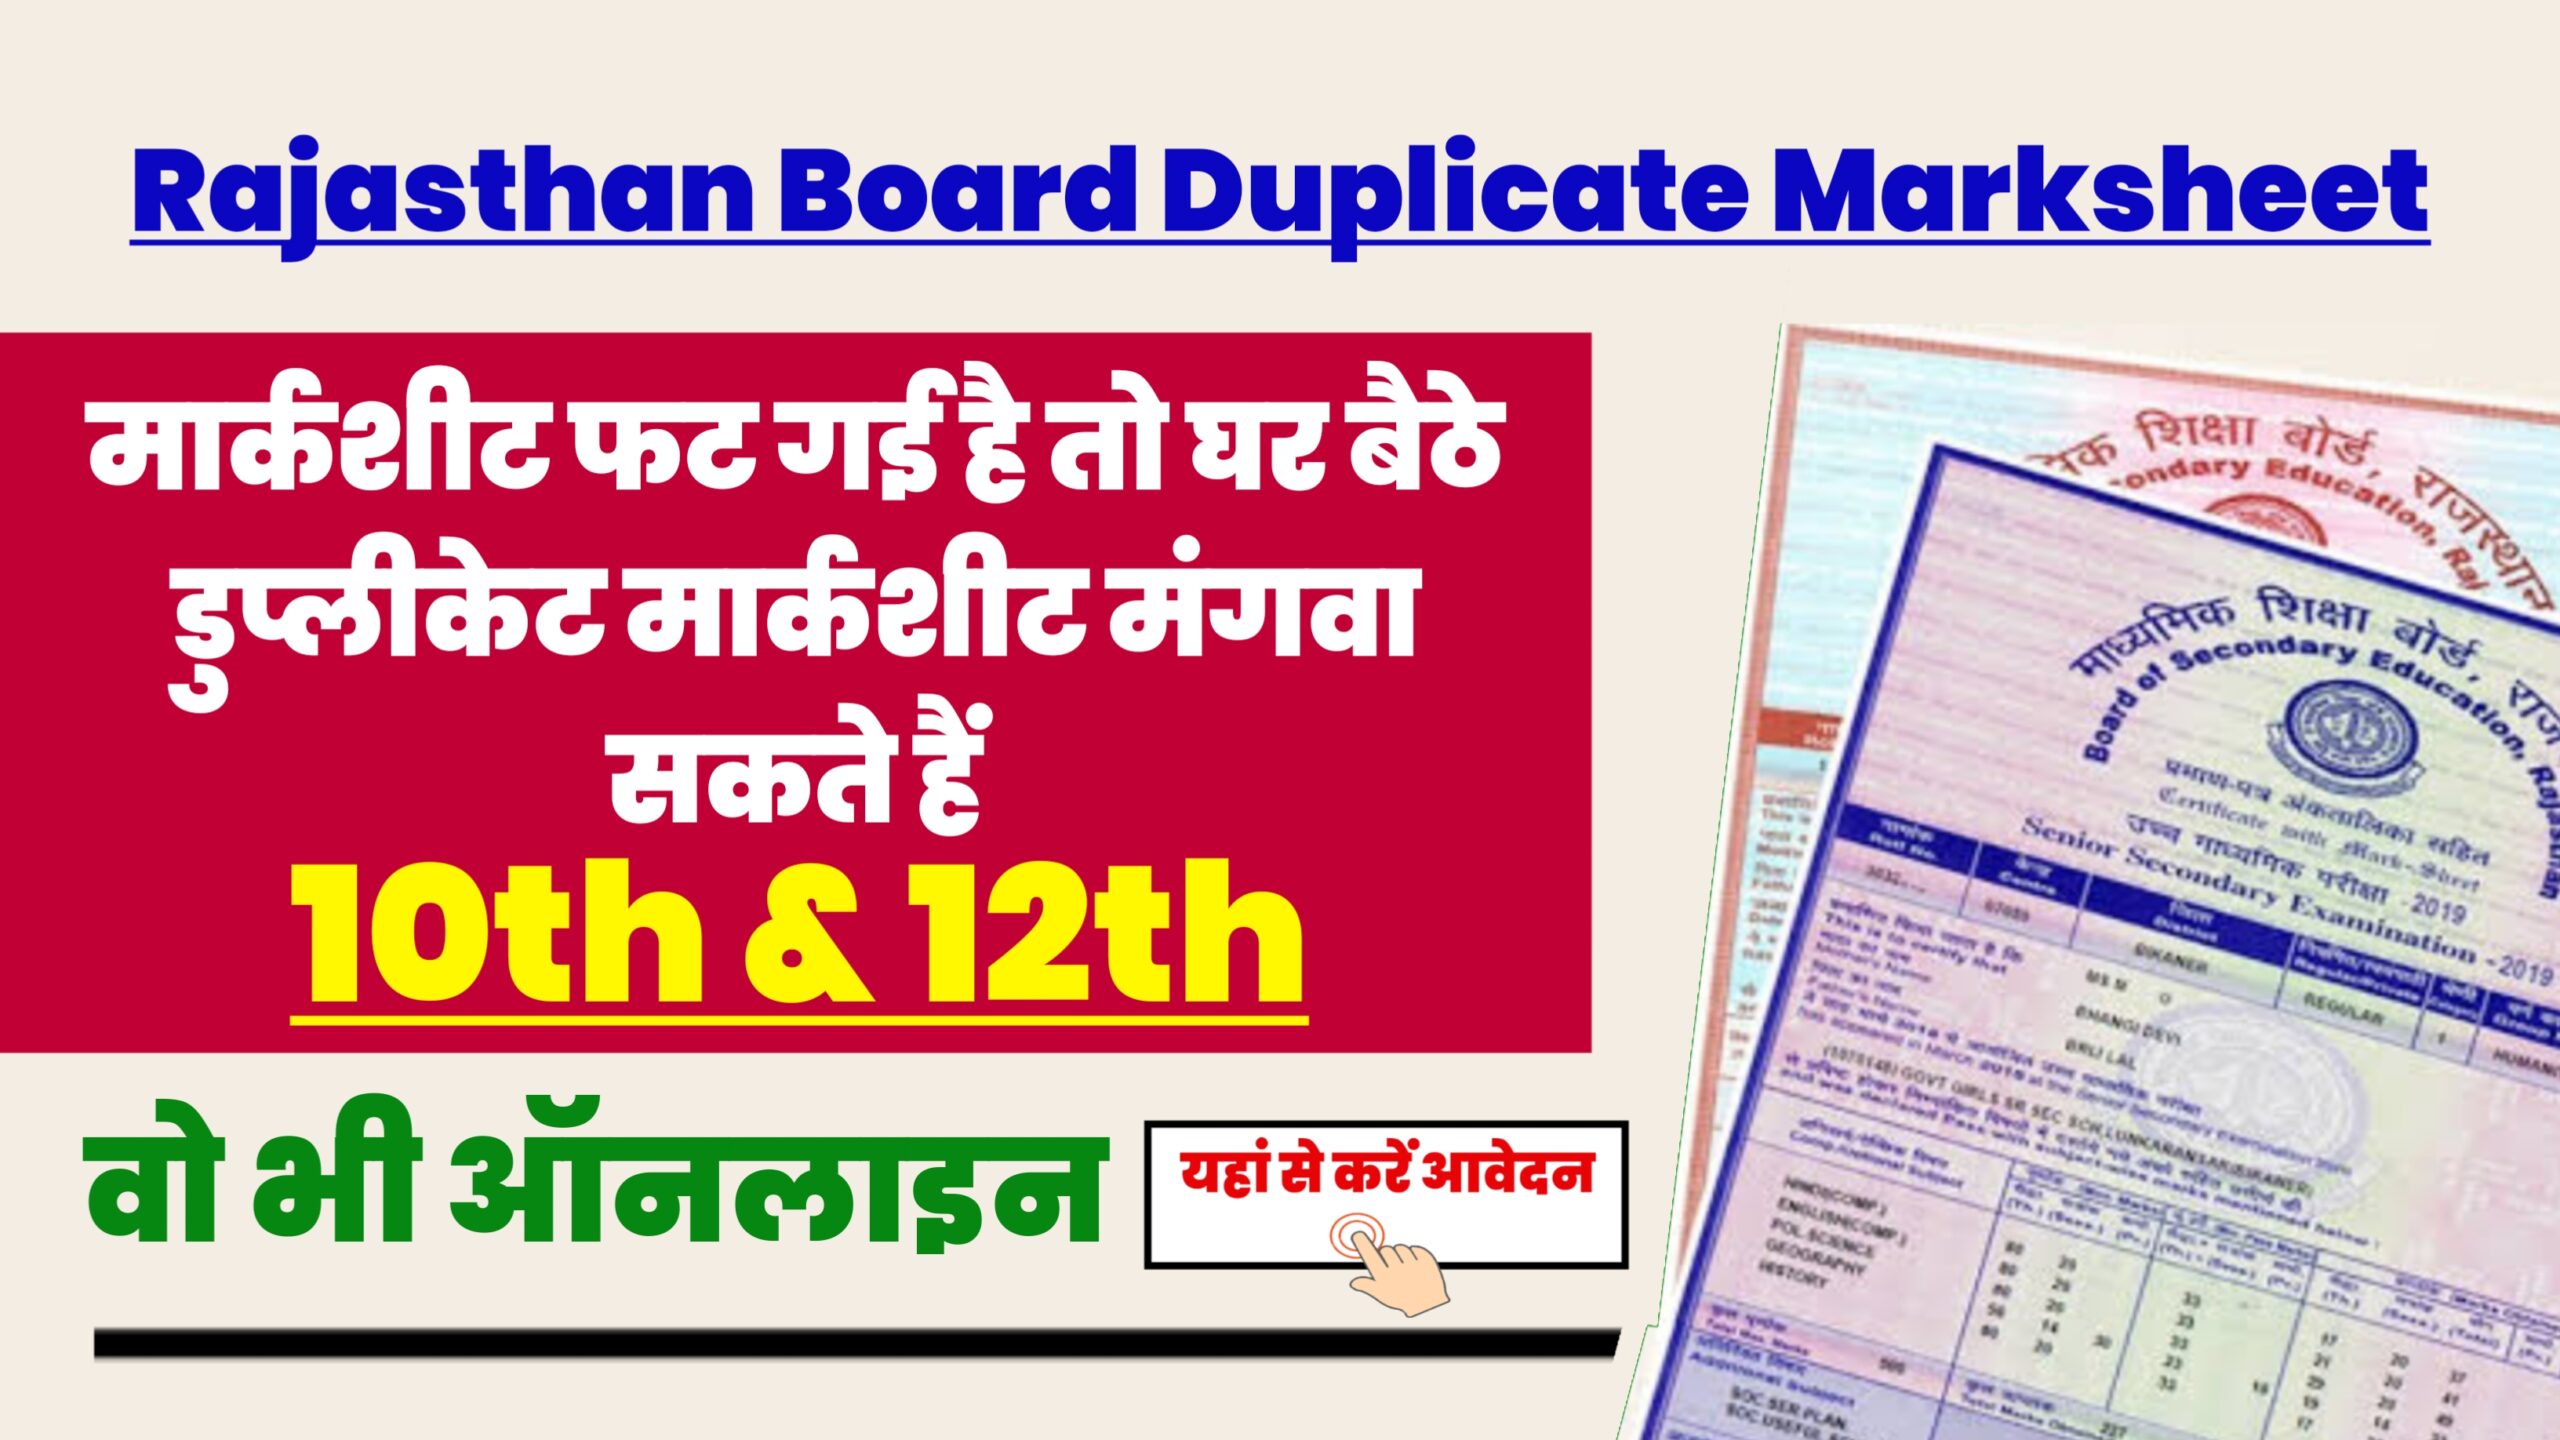 Rajasthan Board Duplicate Marksheet